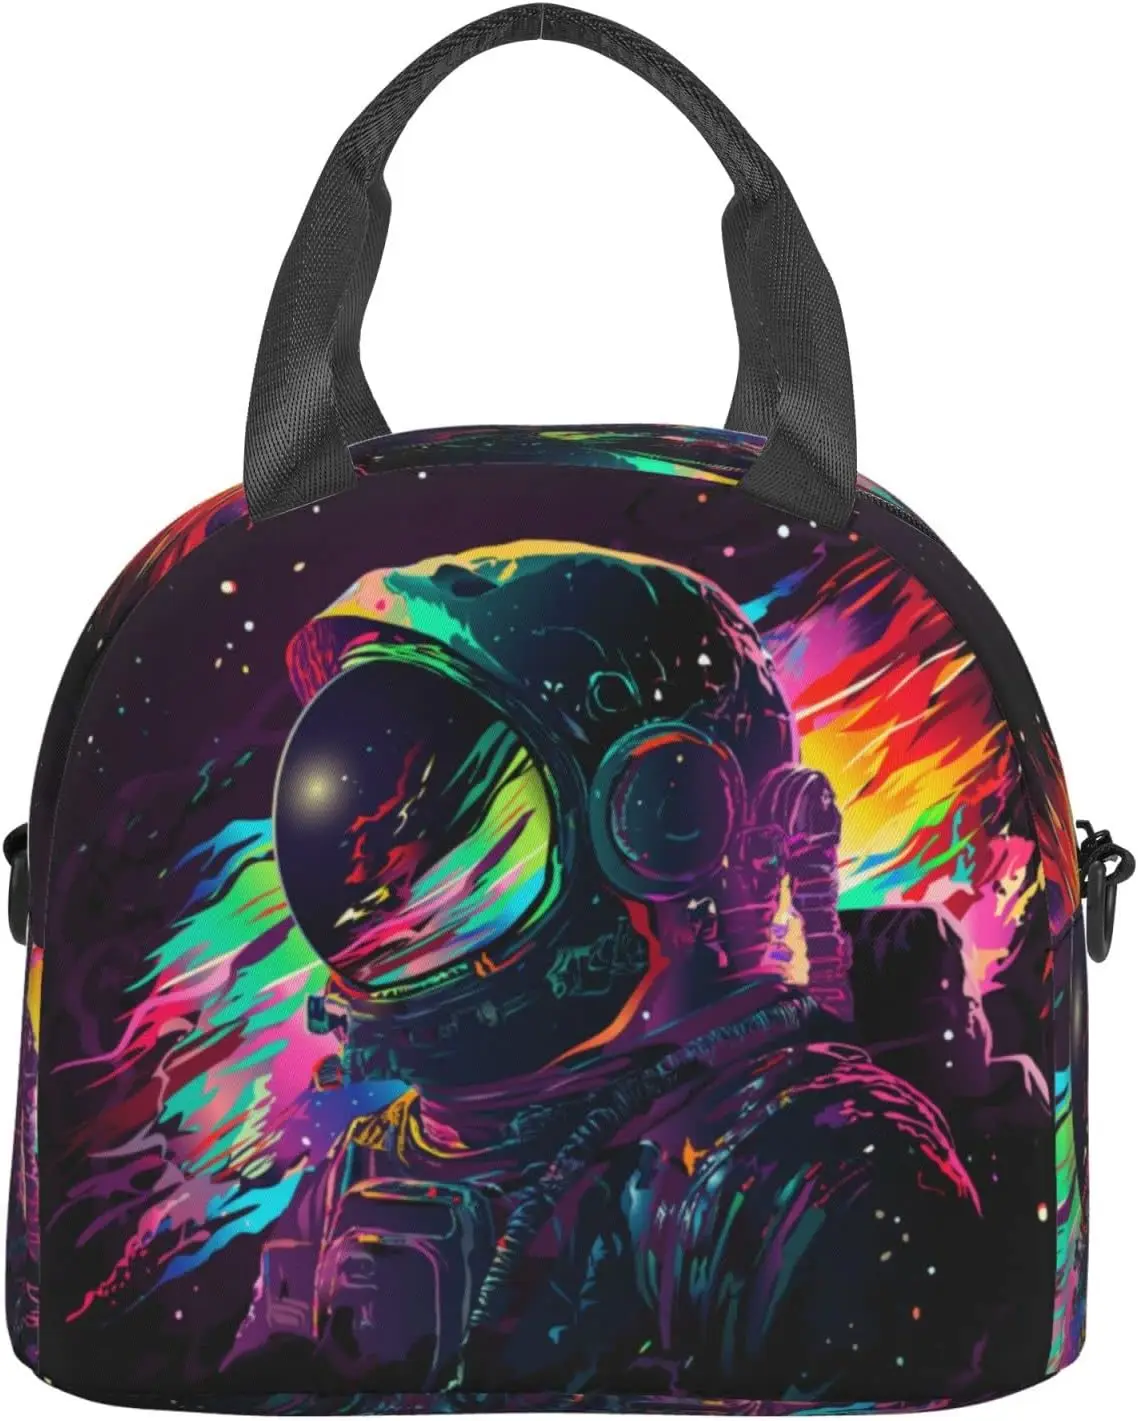 AstronsomColorful-sac à lunch isotherme avec bretelles, sac fourre-tout étanche pour le bureau et les voyages, pour femmes et hommes